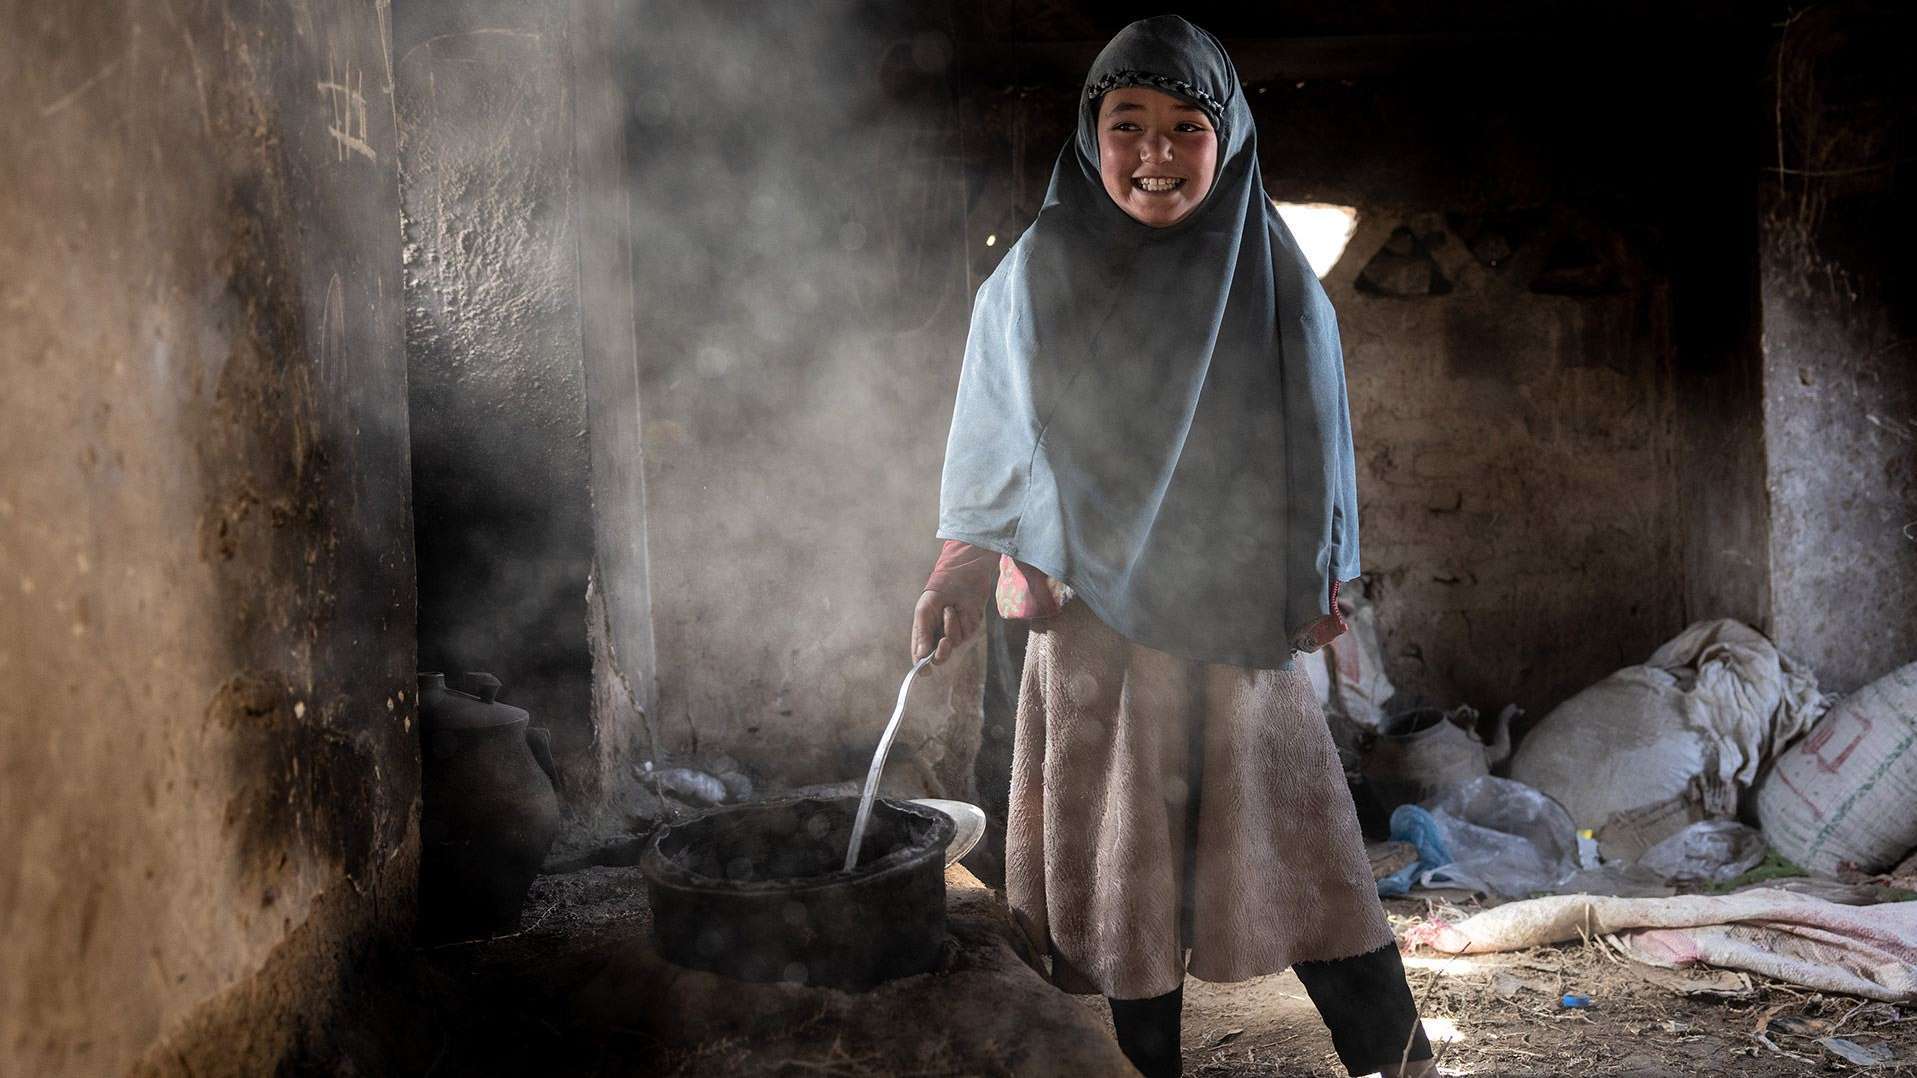 Khushi floh mit ihrer Familie vor der anhaltenden Gewalt in Afghanistan. Sie erhielten Lebensmittelunterstützung von der Welthungerhilfe.